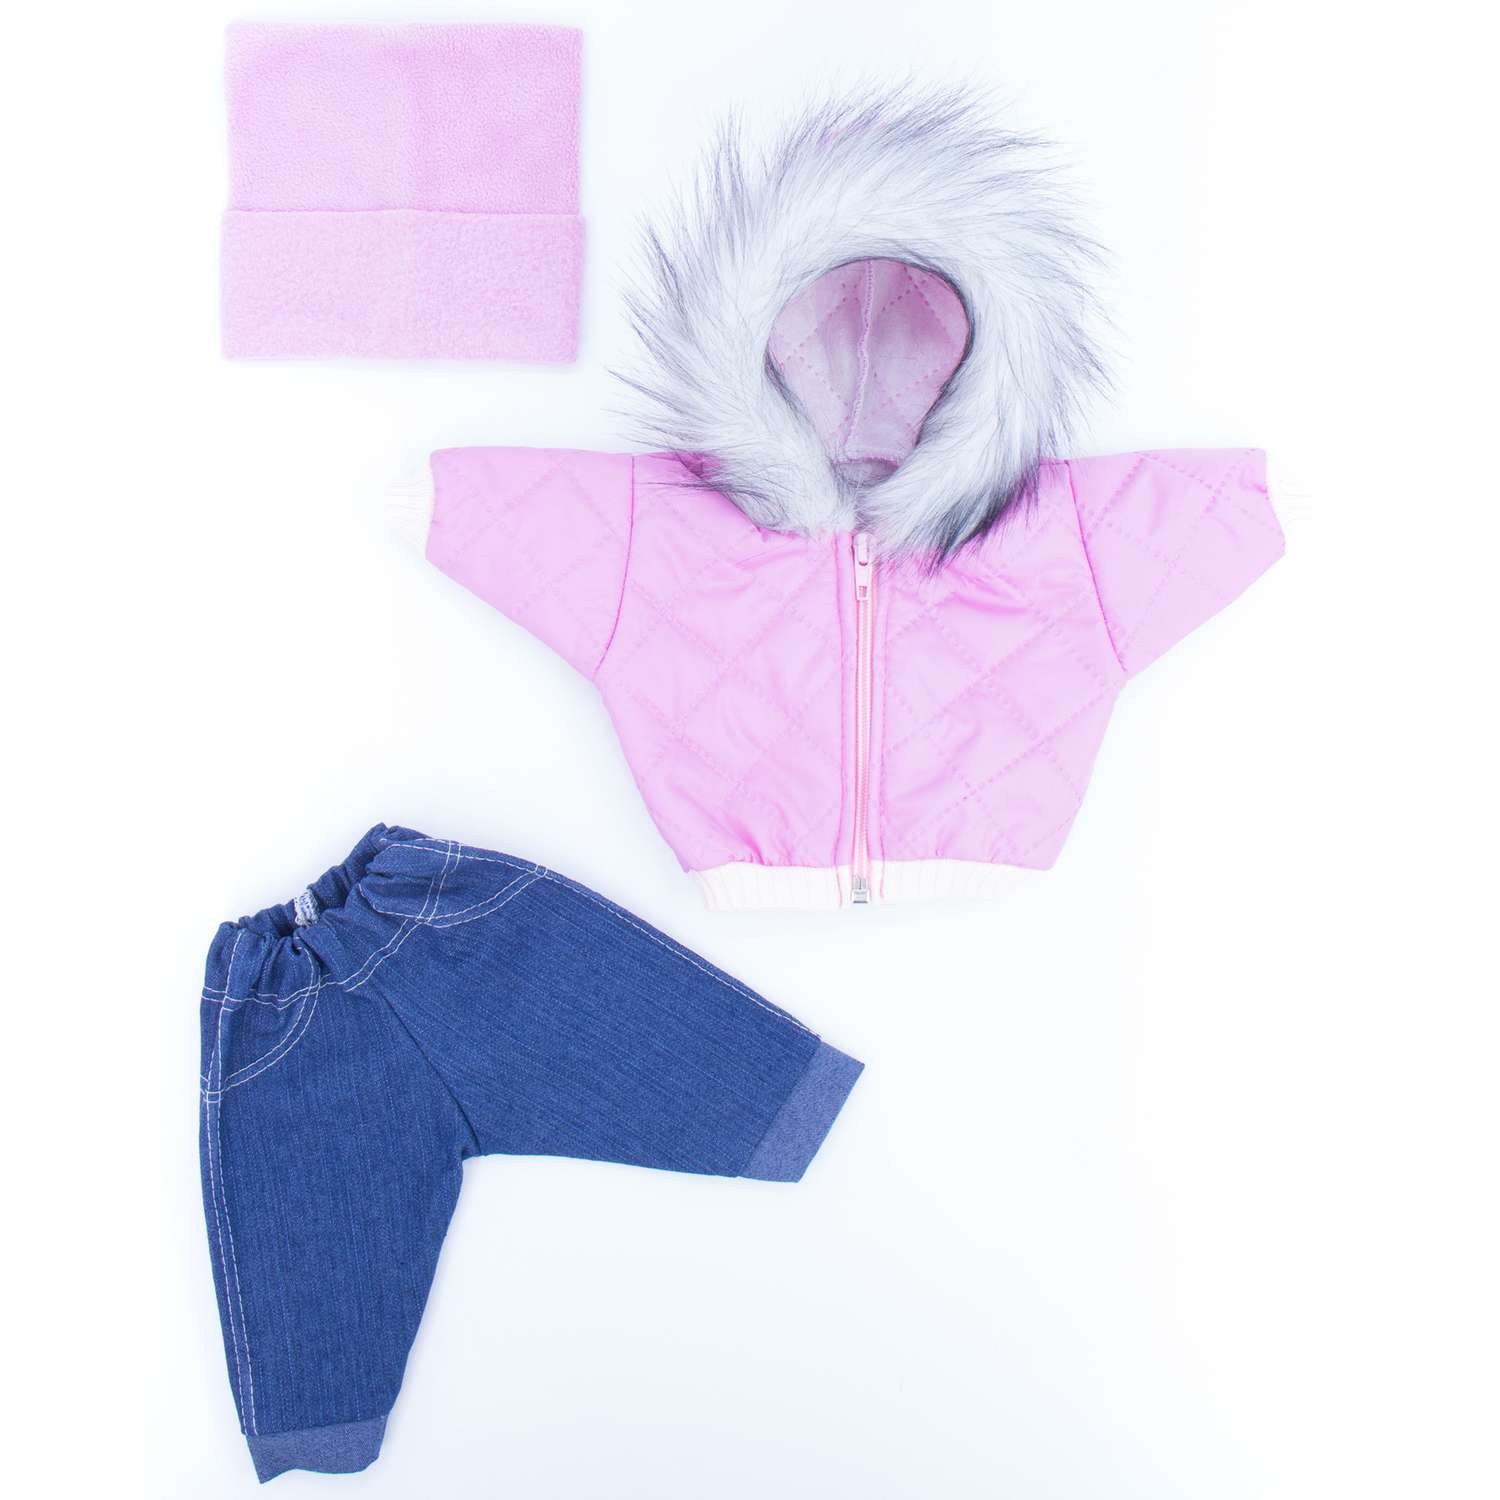 Комплект для пупса Модница 43-48 см: куртка с опушкой джинсы и шапочка 6120 цикламен-розовый 6120цикламен-розовый - фото 13